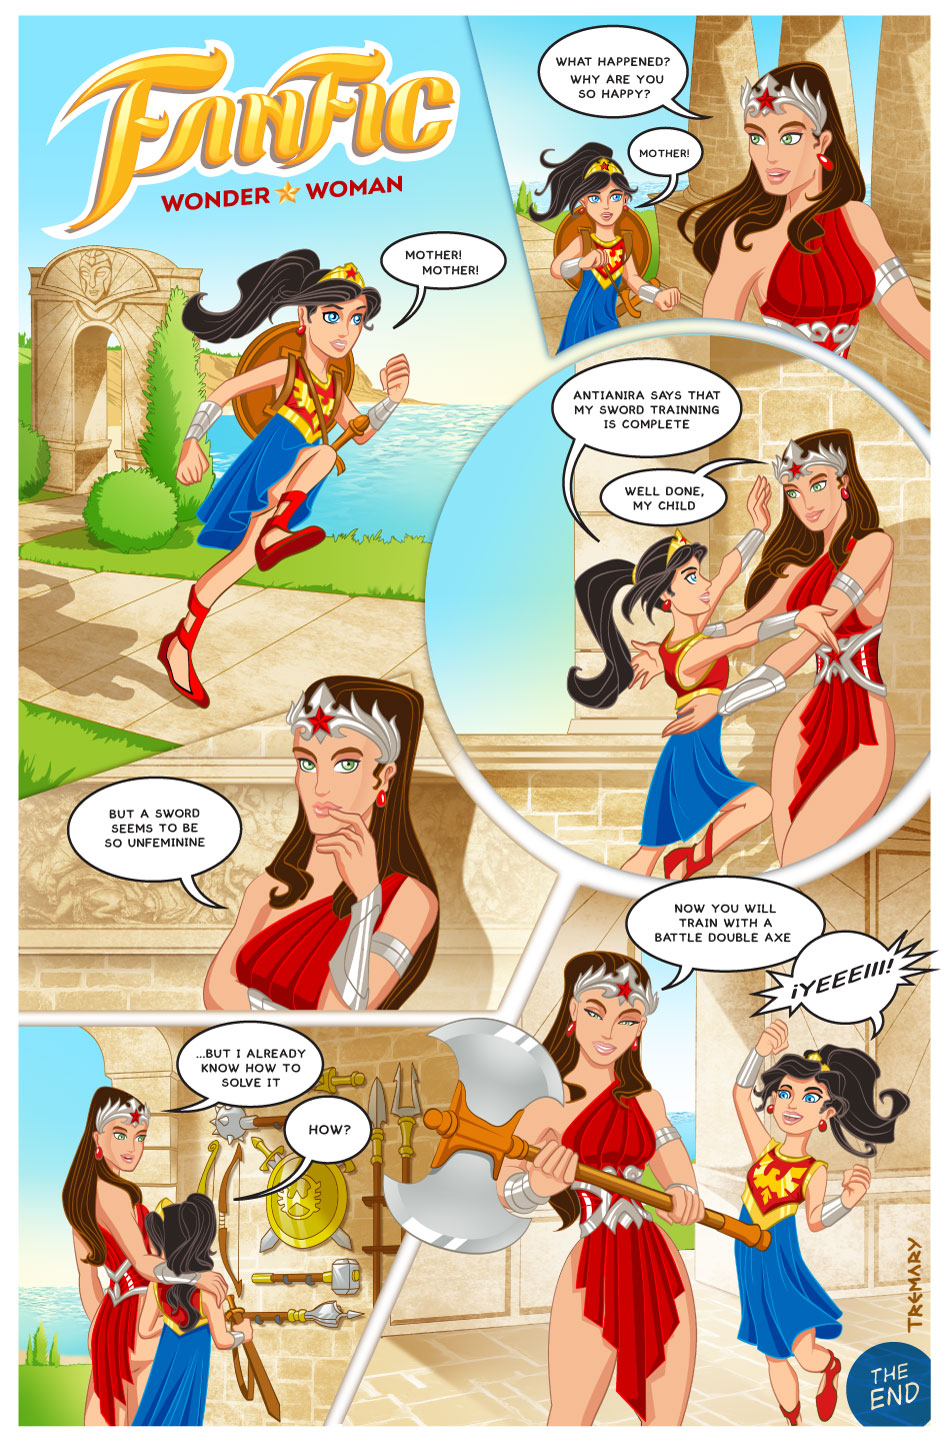 Wonder Woman Fan Fiction 002